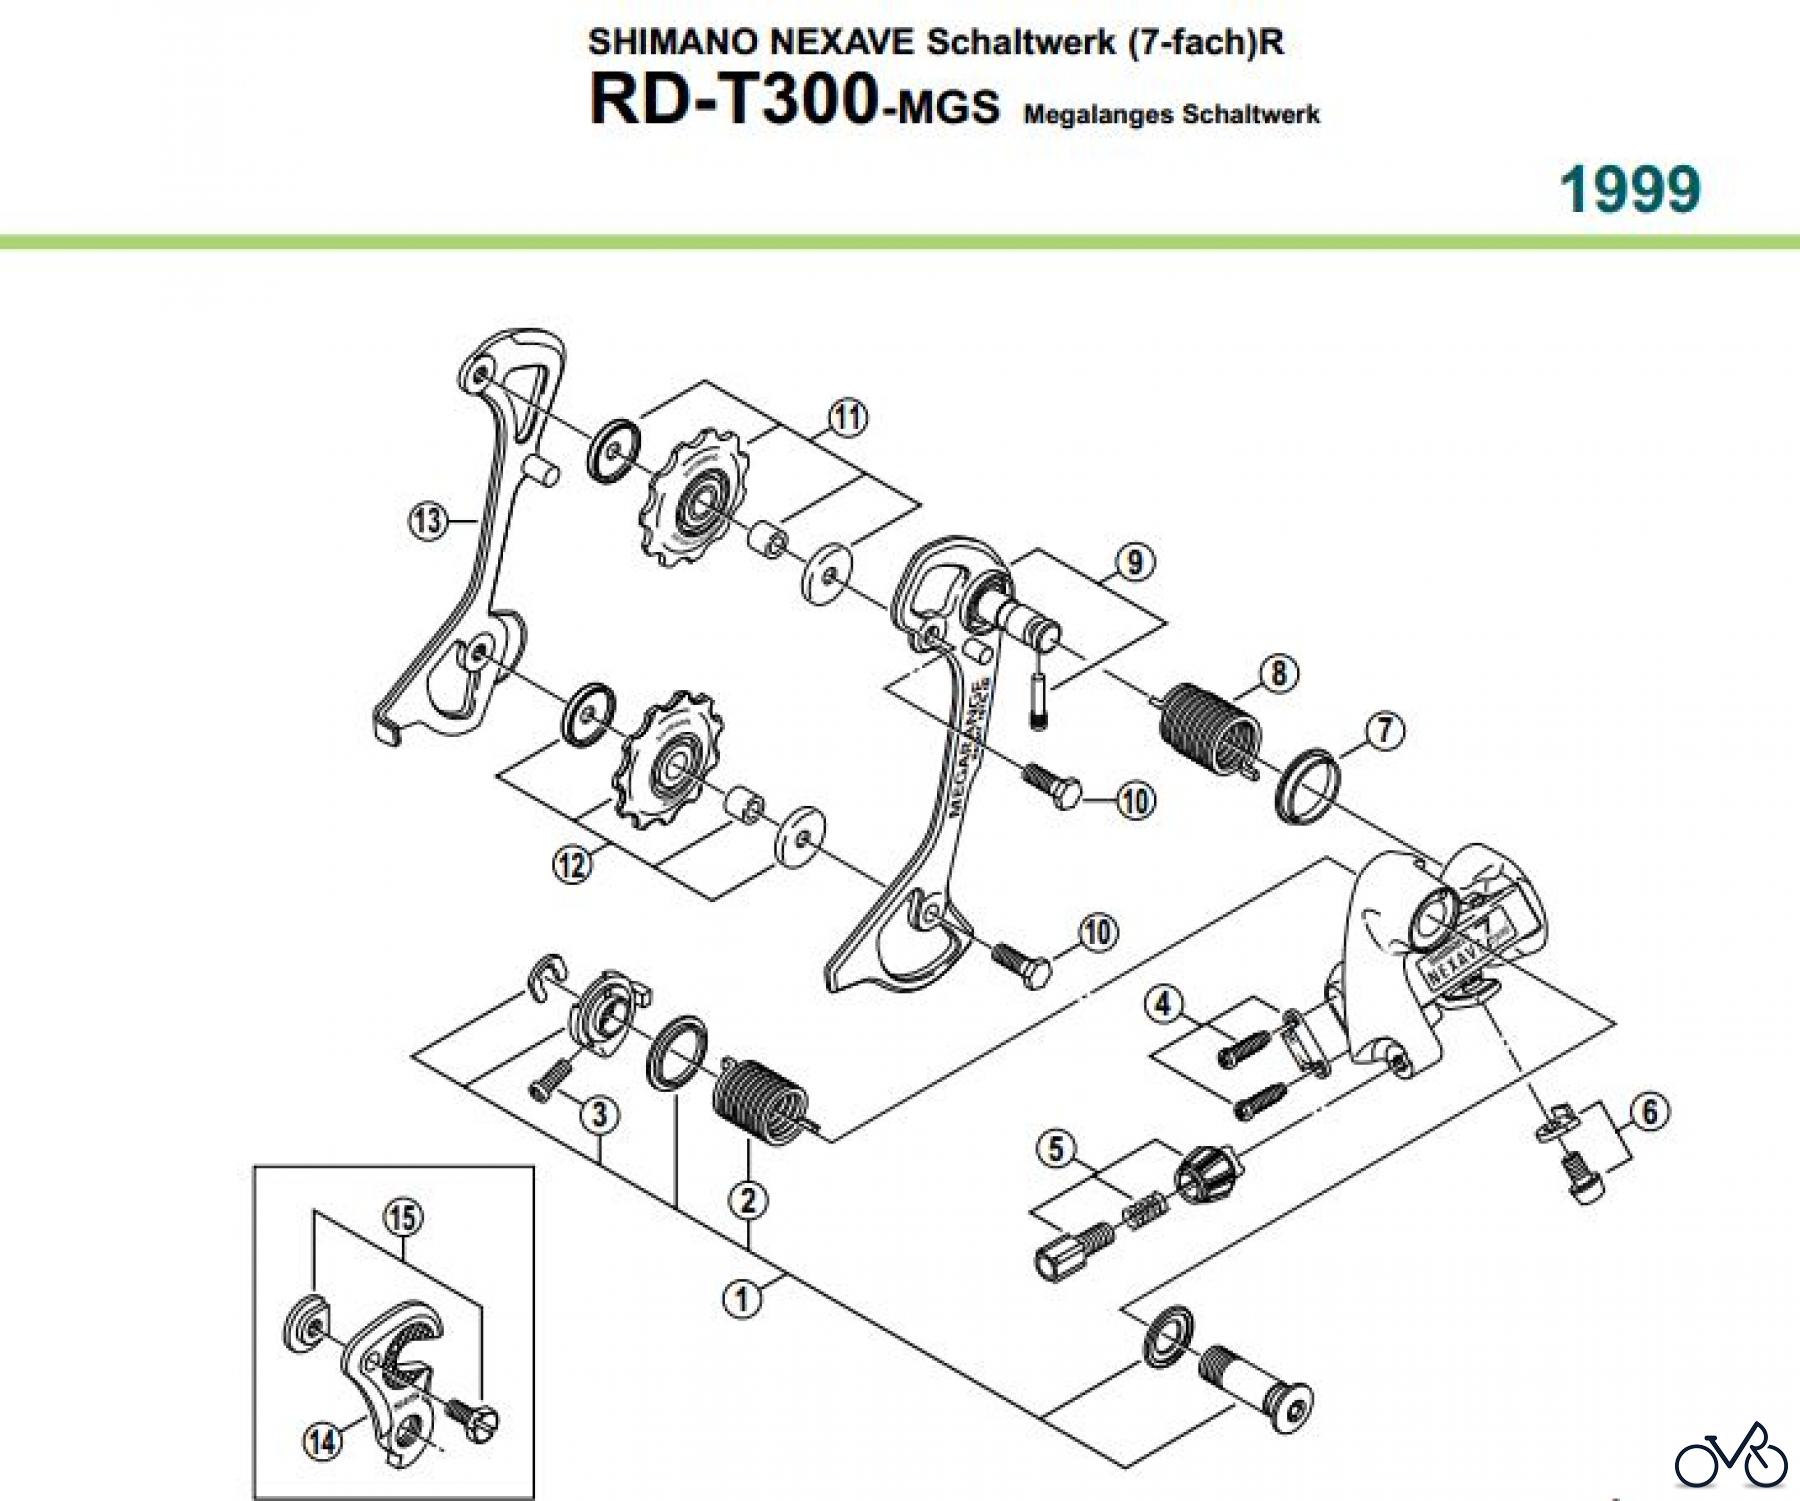  Shimano RD Rear Derailleur - Schaltwerk RD-T300-MGS-99